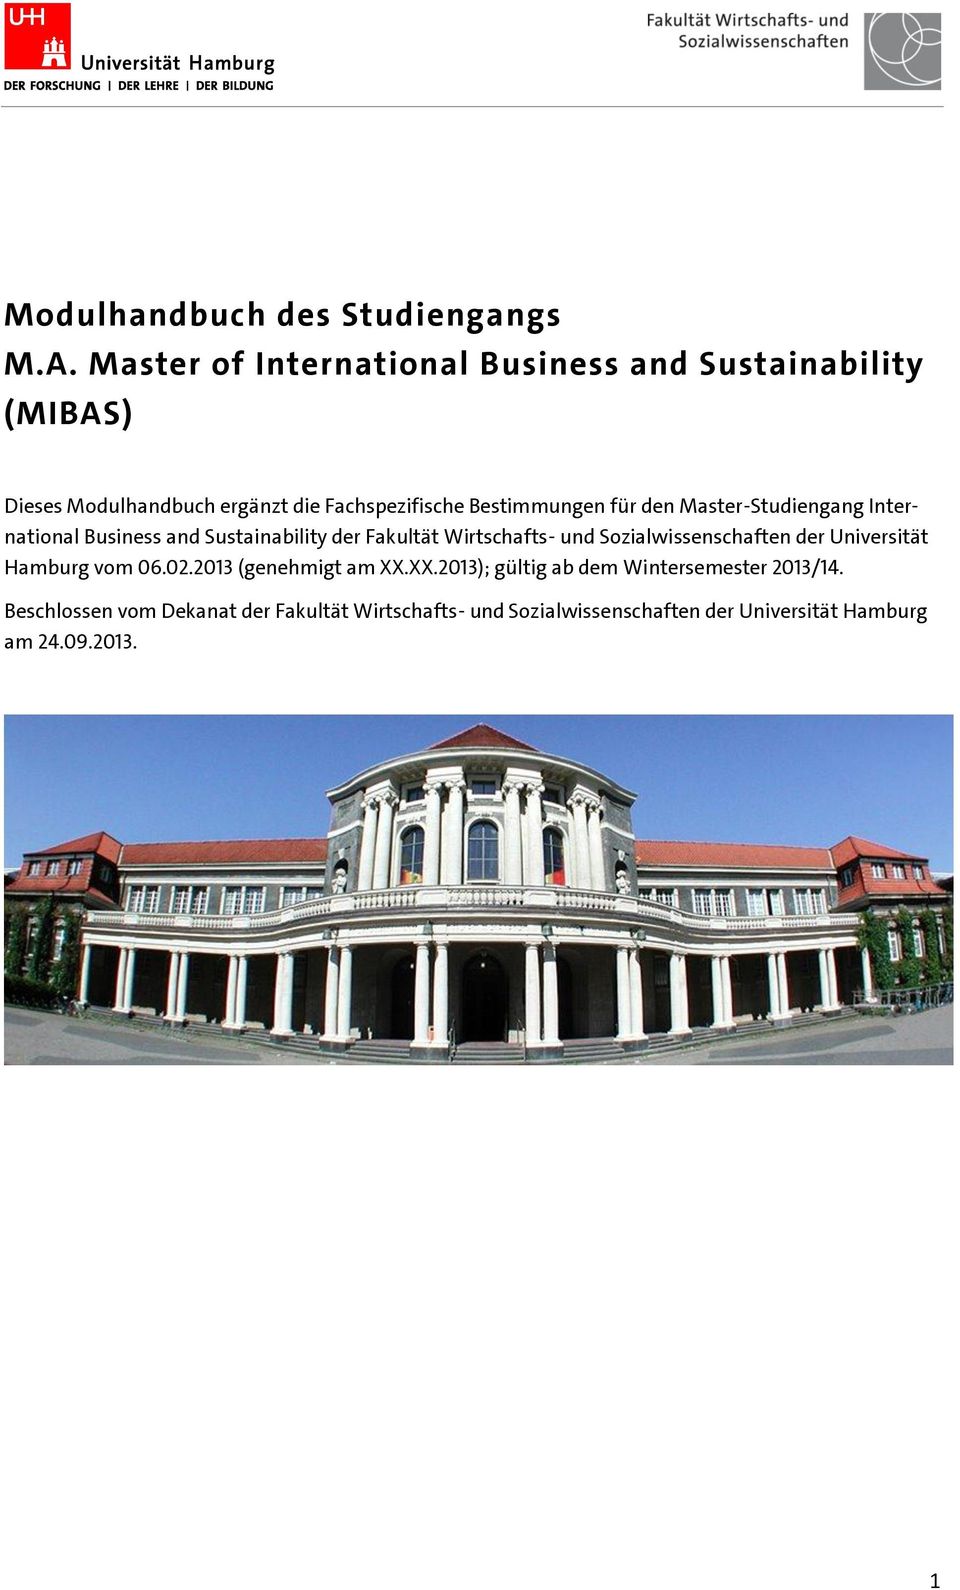 für den Master-Studiengang International Business and Sustainability der Fakultät Wirtschafts- und Sozialwissenschaften der